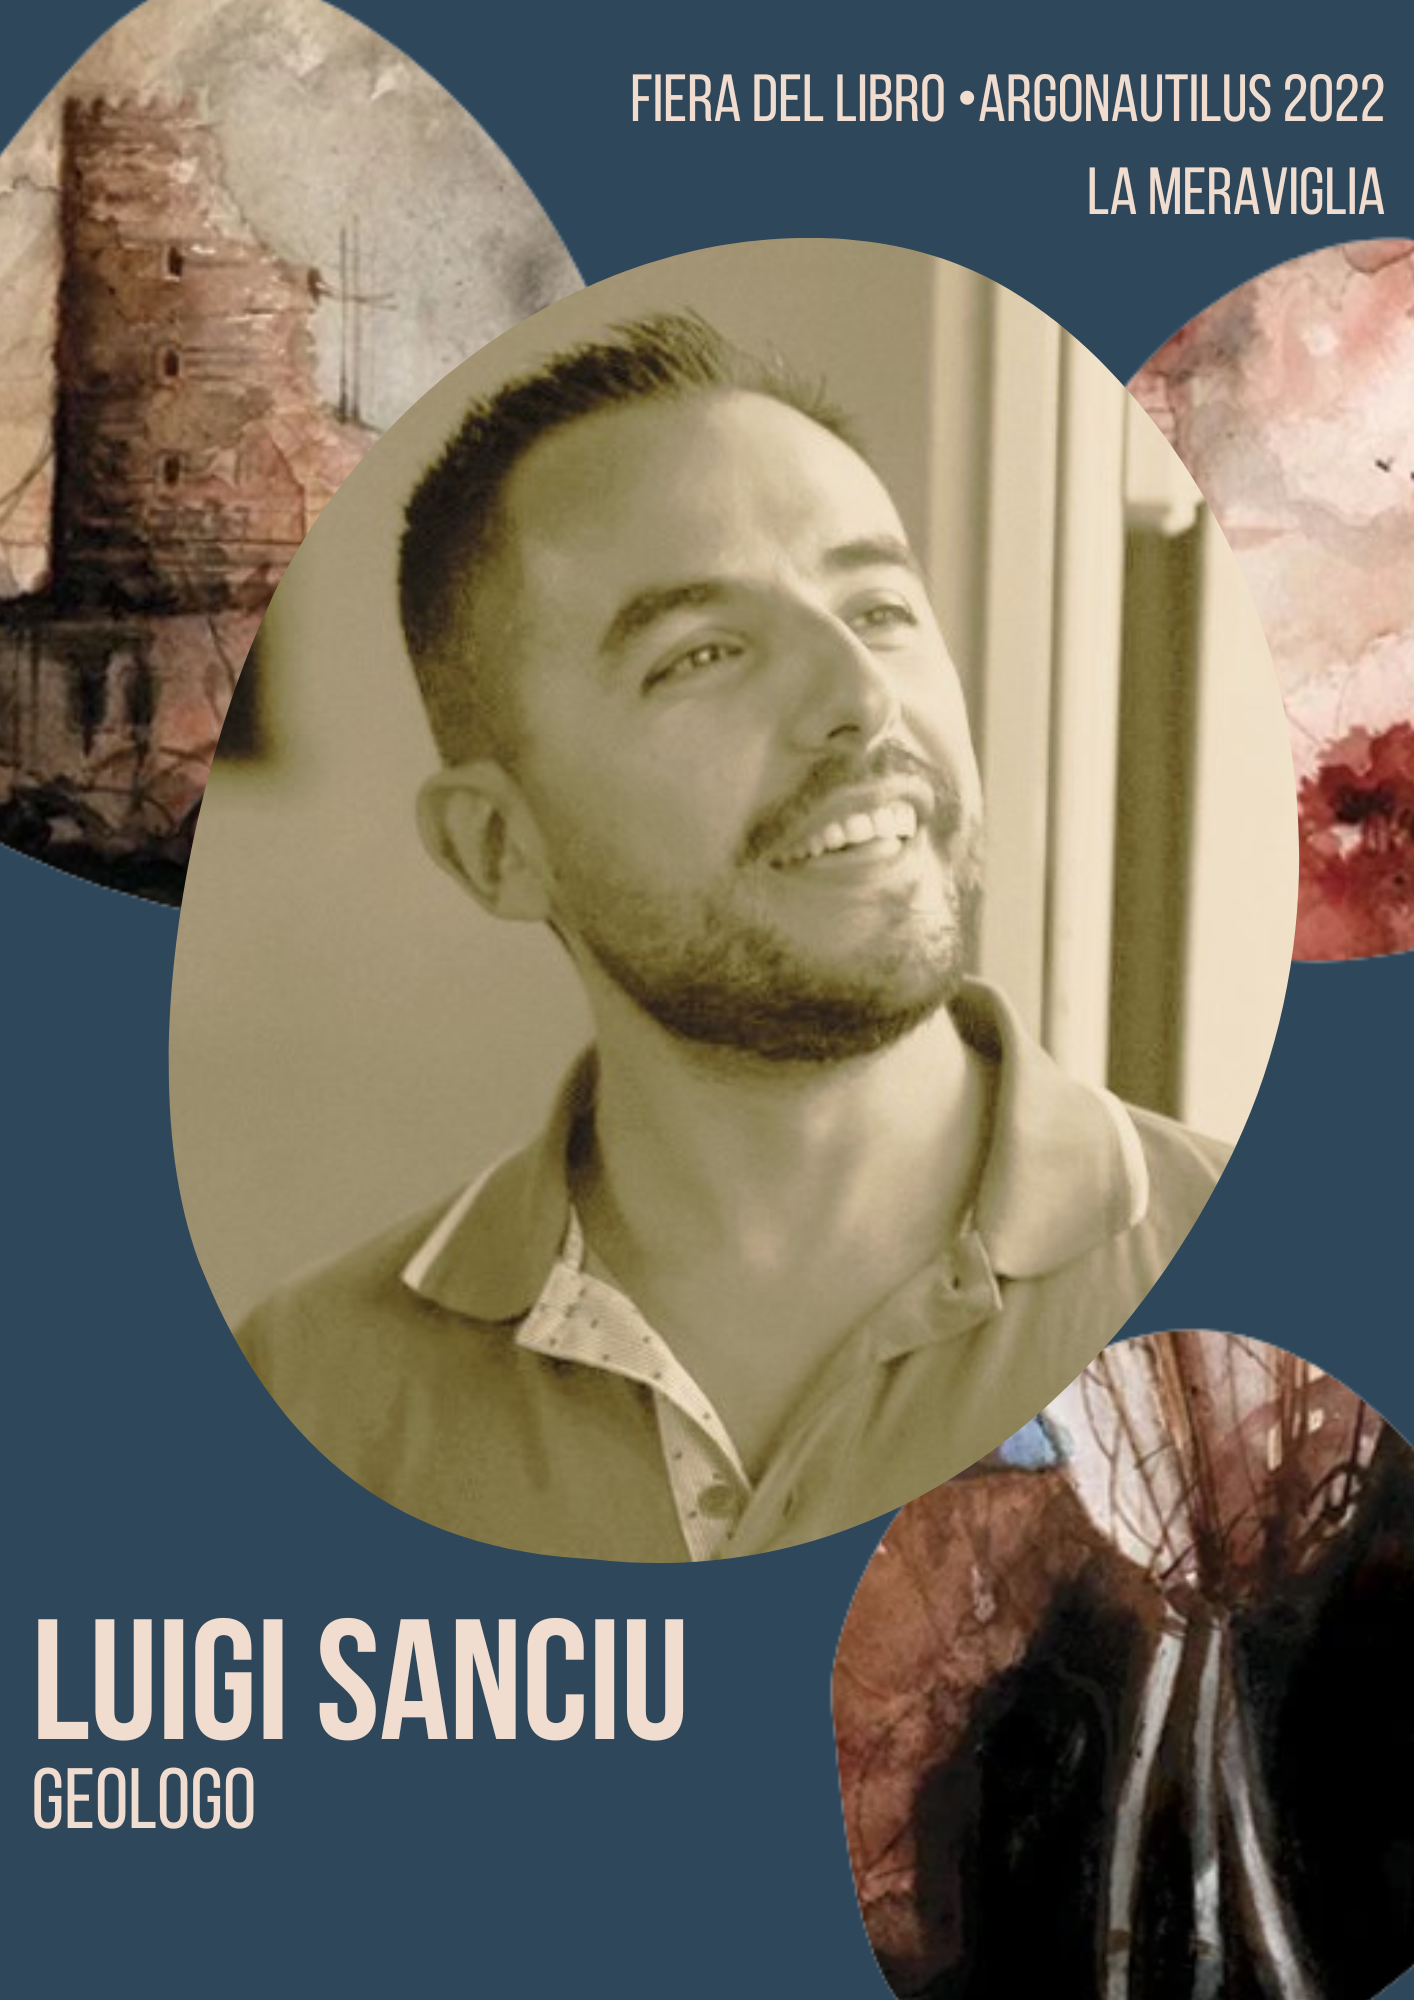 Luigi Sanciu